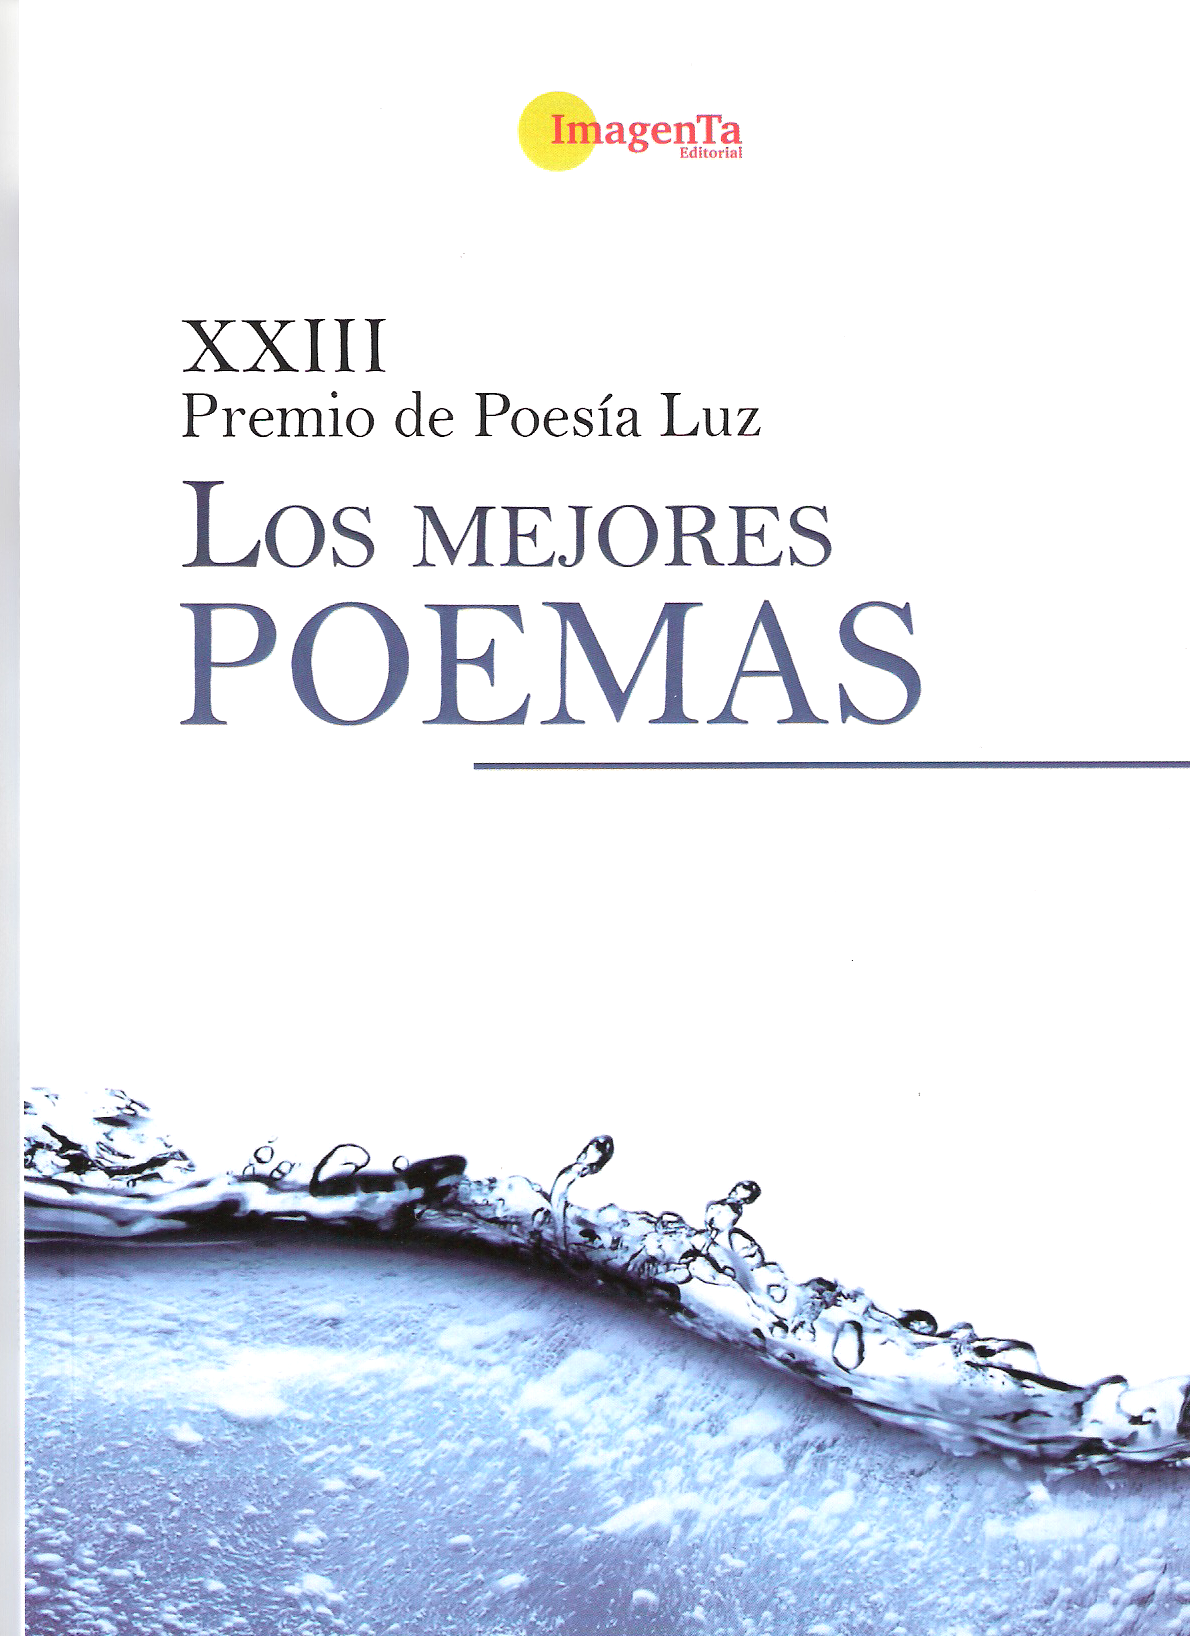 XXIII Premio de poesía Luz. Los mejores poemas.